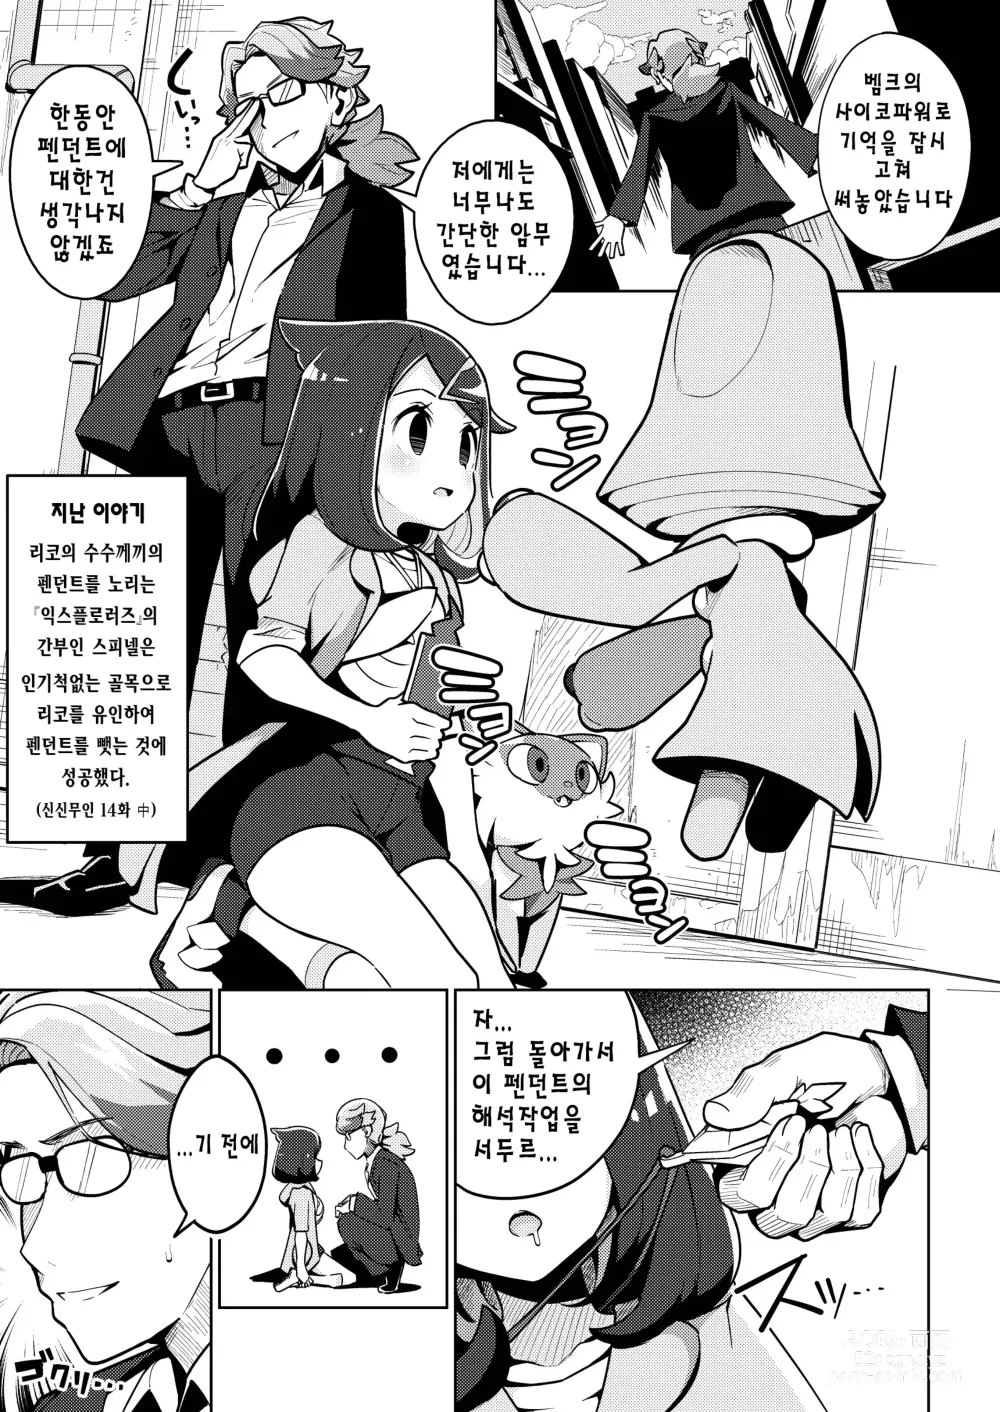 Page 2 of doujinshi 사이코파워라는건 대체 뭐죠?